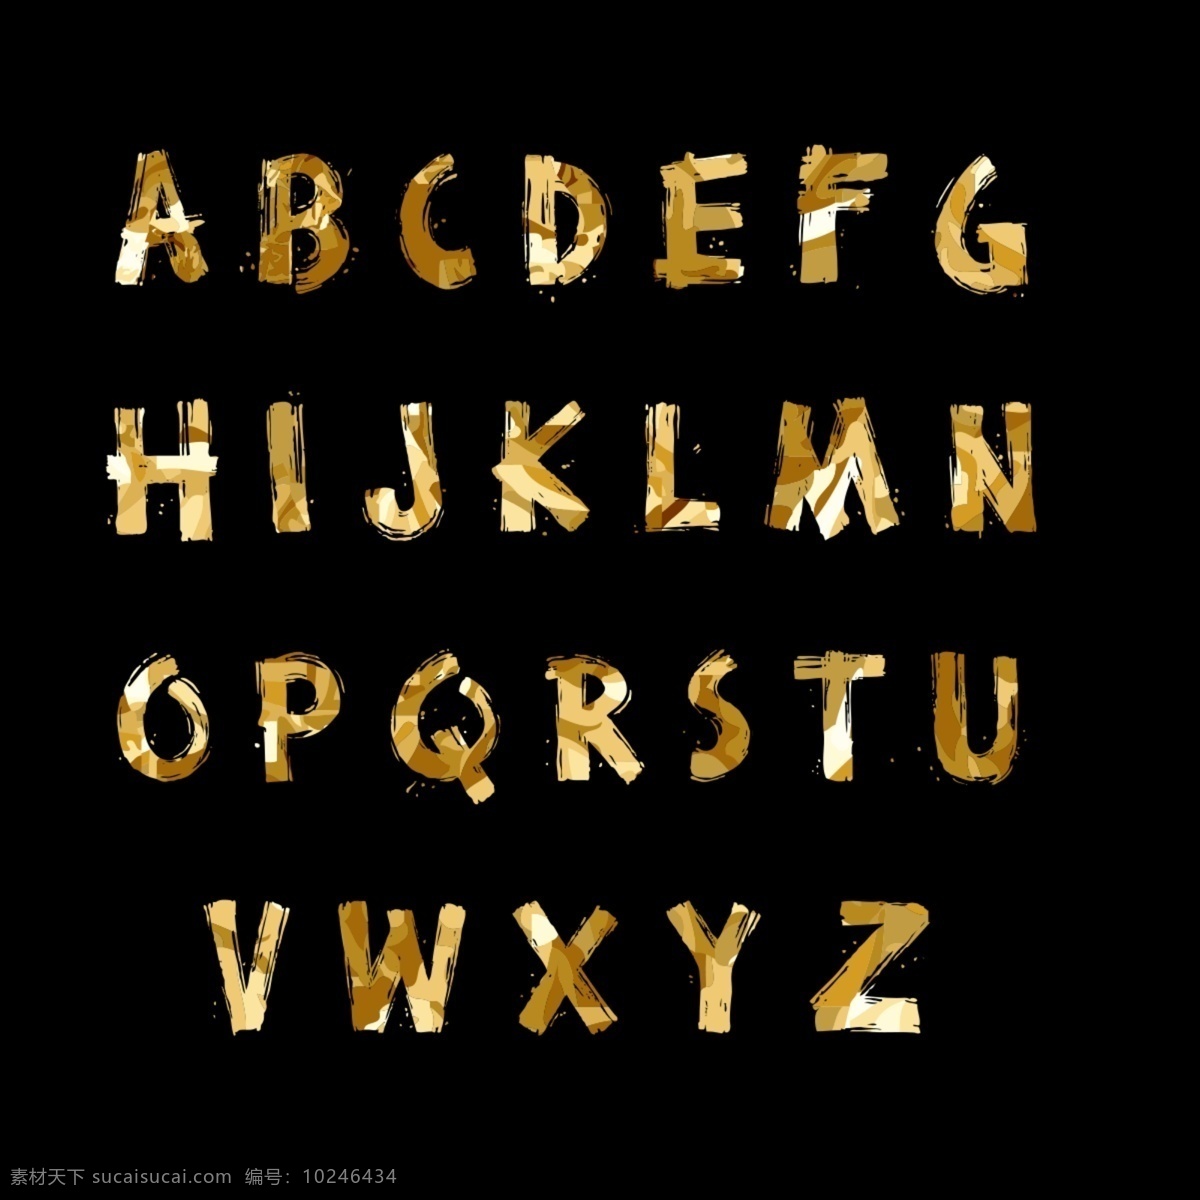 手写字母 矢量字母 黄色字母 黄色图案字母 手绘金色字母 大写字母 英文字母 创意字母 艺术字母 时尚字母 现代字母 简洁字母 简约字母 描边字母 绚丽字母 炫酷字母 线条字母 曲线字母 数字字母 标志图标 其他图标